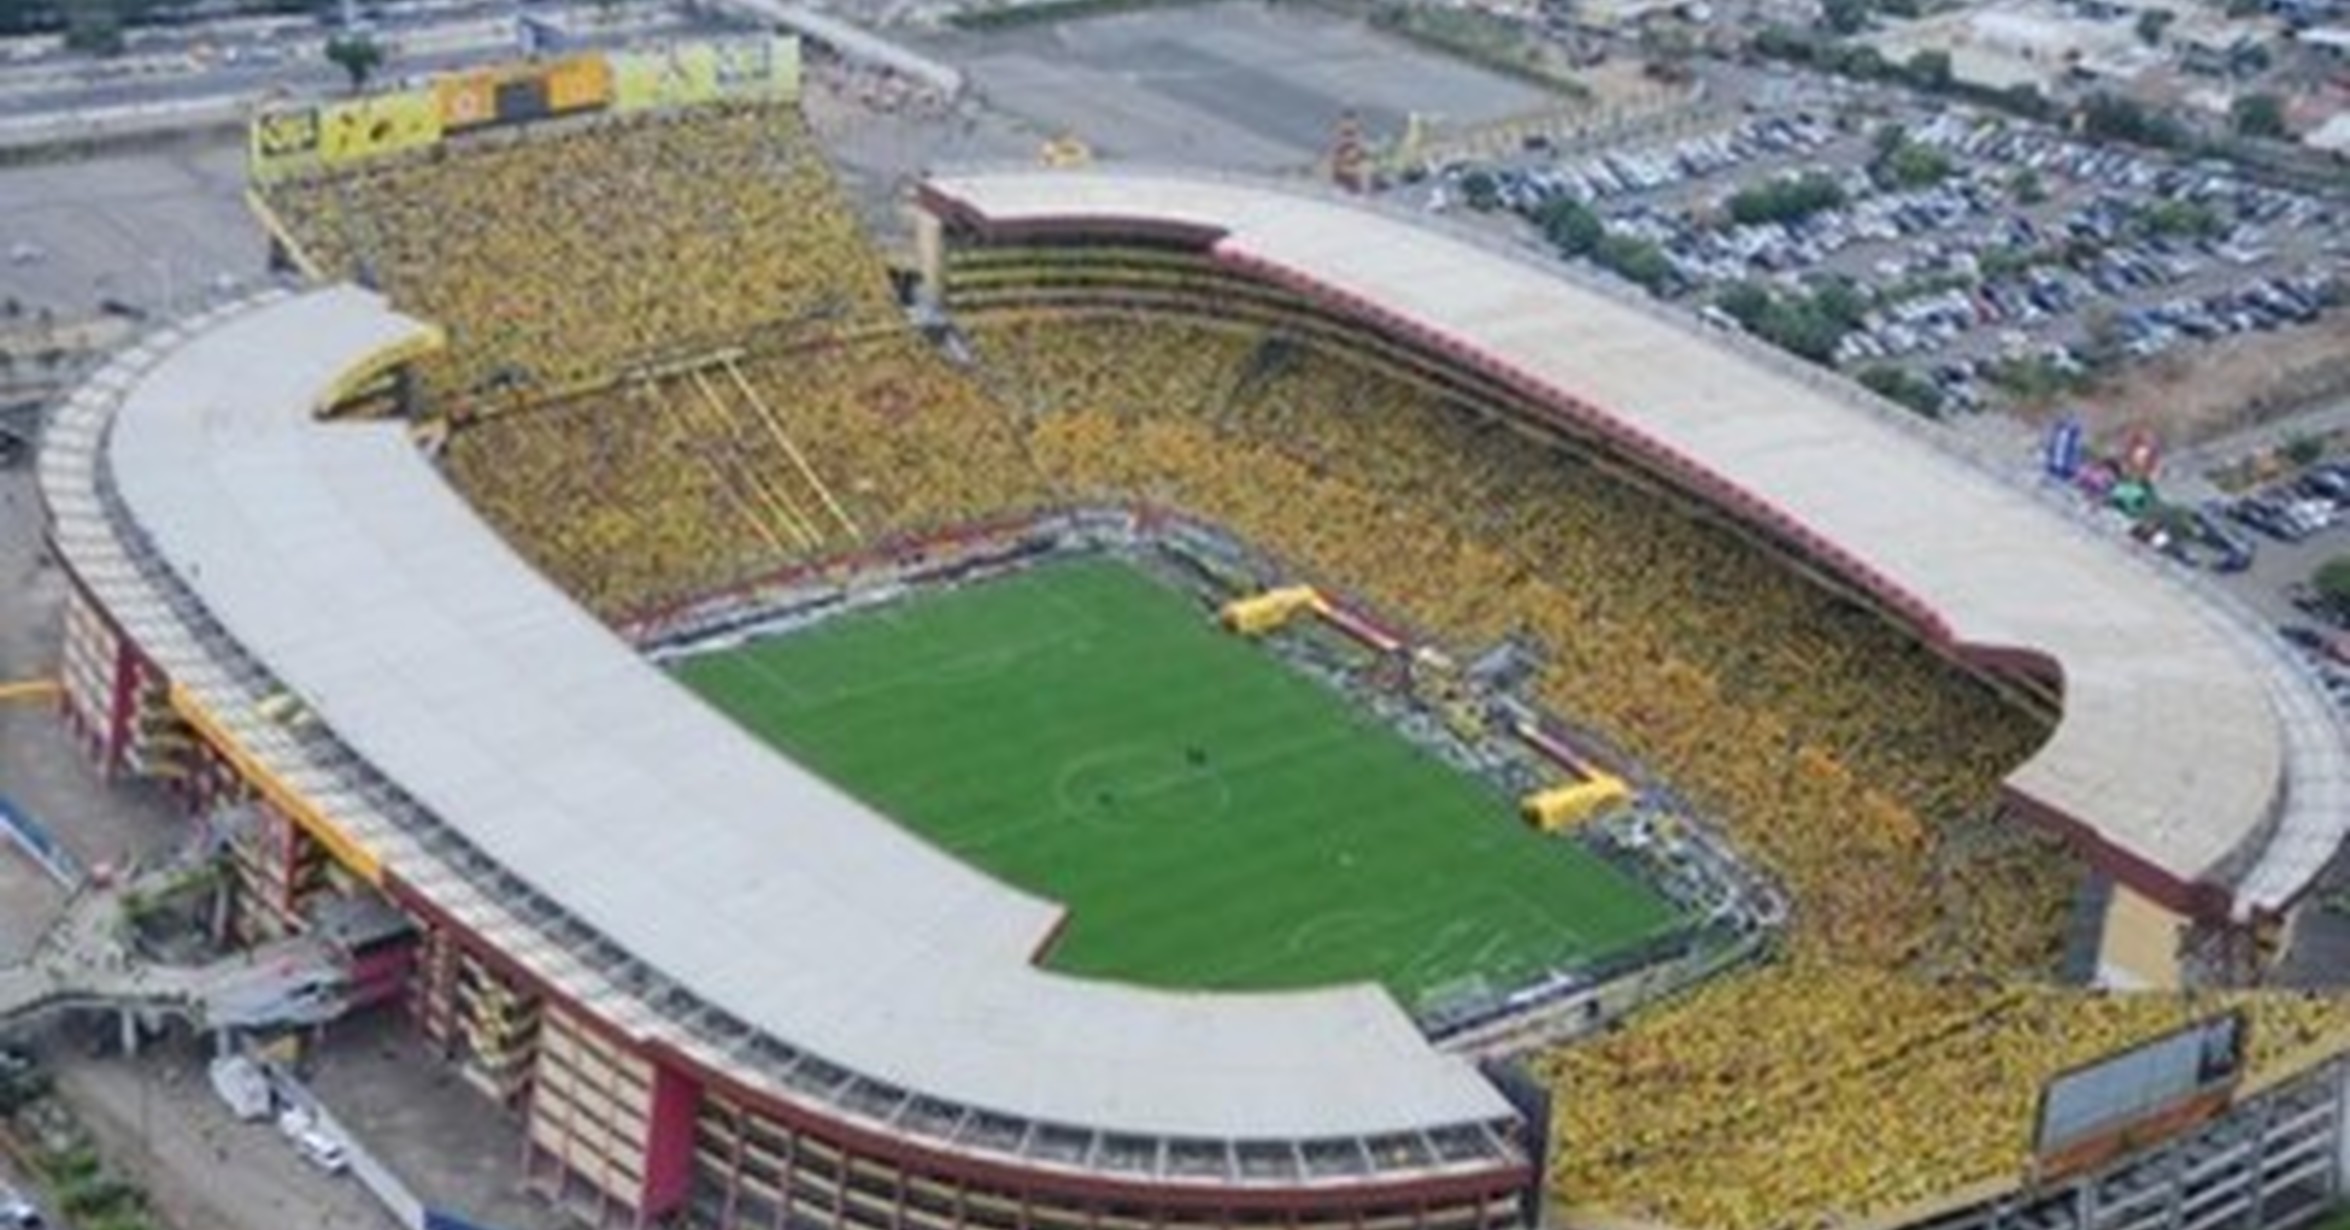 ¿Cuál es el estadio de fútbol más grande de Latinoamerica